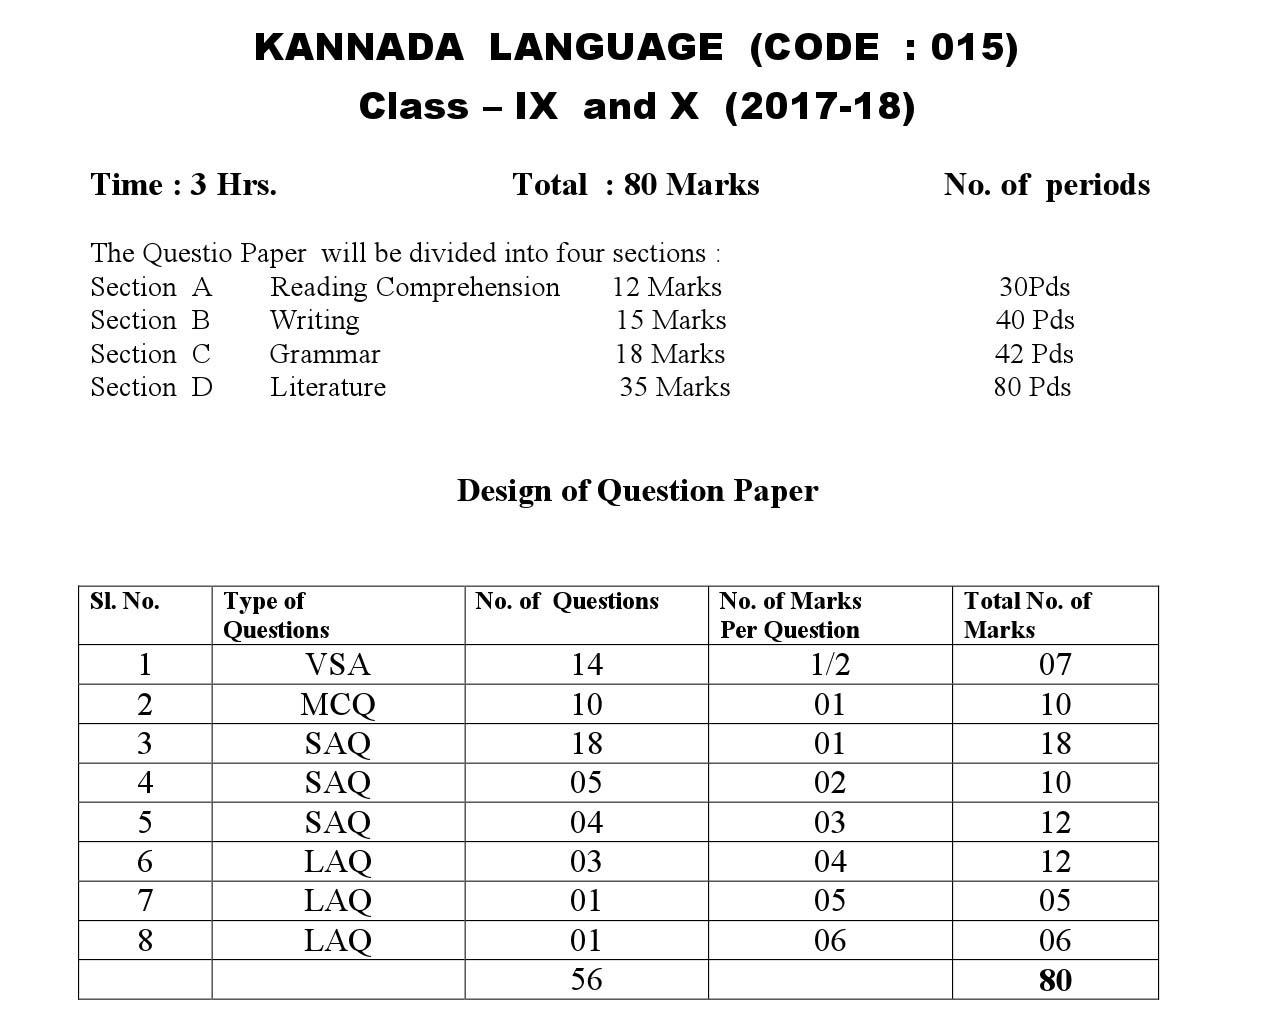 Kannada CBSE Class X Sample Question Paper 2017 18 - Image 3